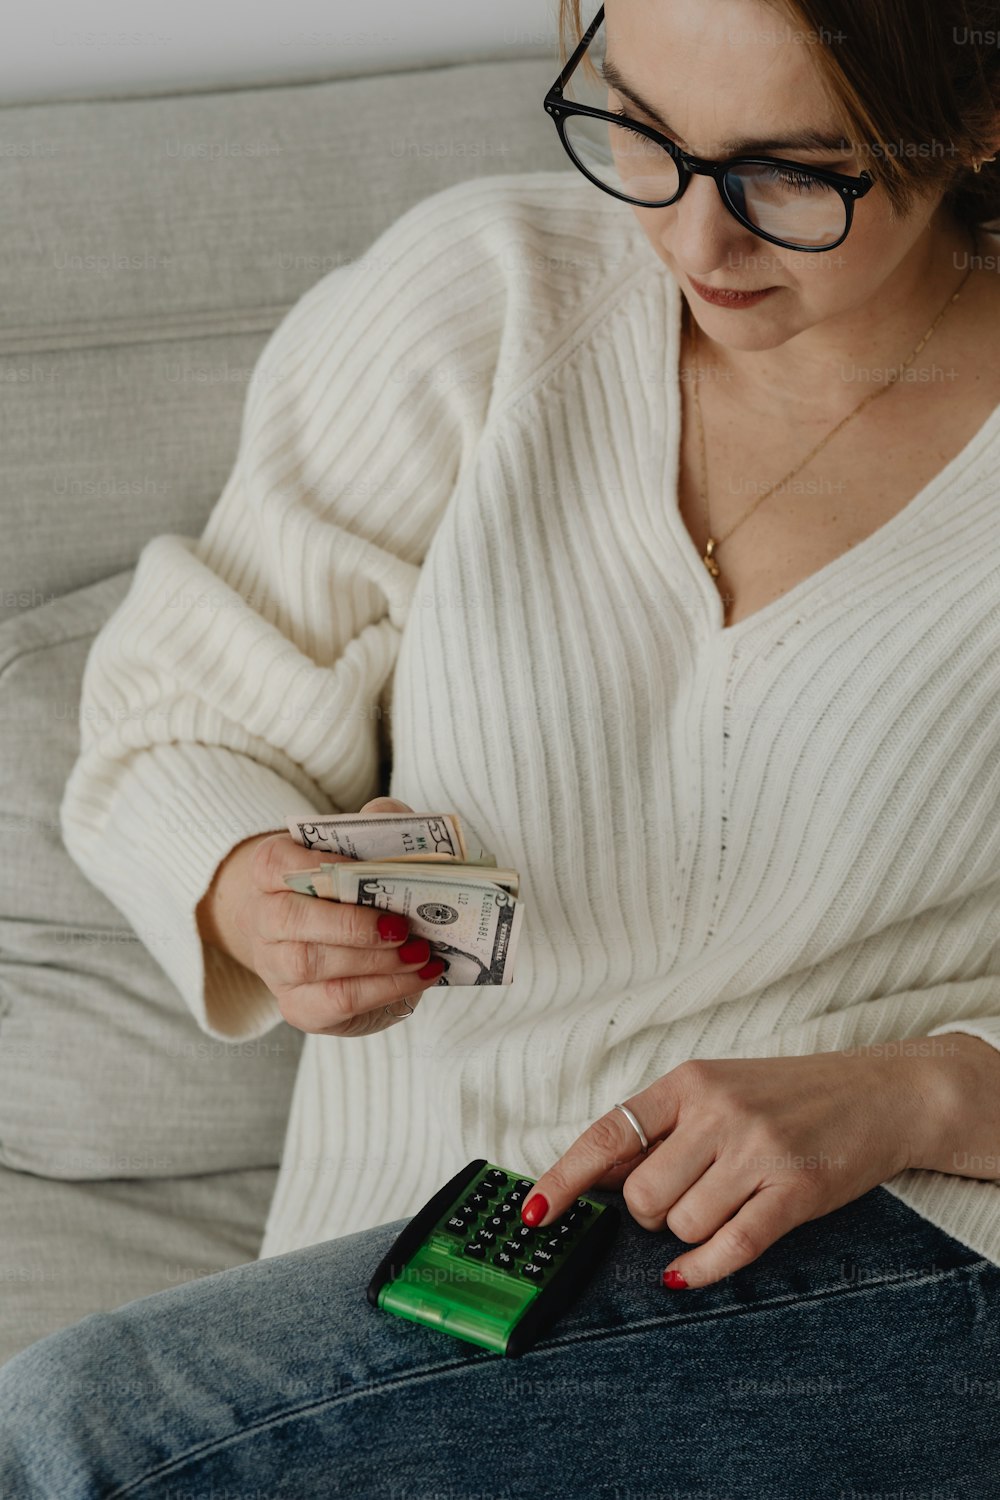 Una donna seduta su un divano con soldi e un telefono cellulare